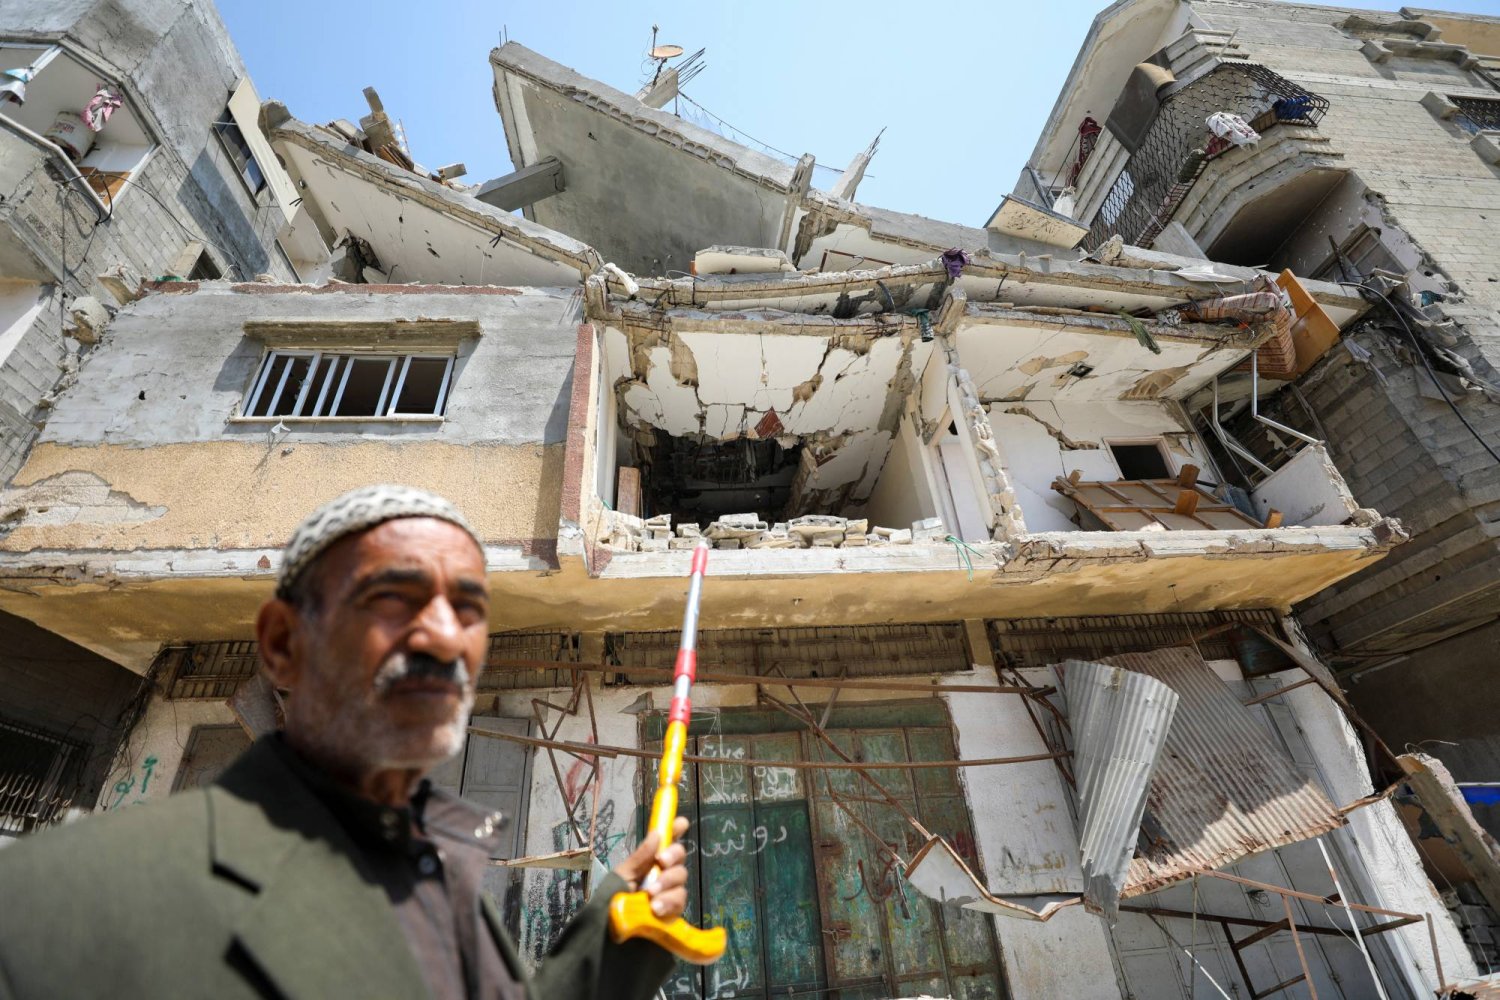 علي عروق الذي قضى حفيده زين بعد إصابته بمساعدات ألقيت جوا على غزة يشير إلى منزلهم الذي أصيب في غارة إسرائيلية الثلاثاء (رويترز)